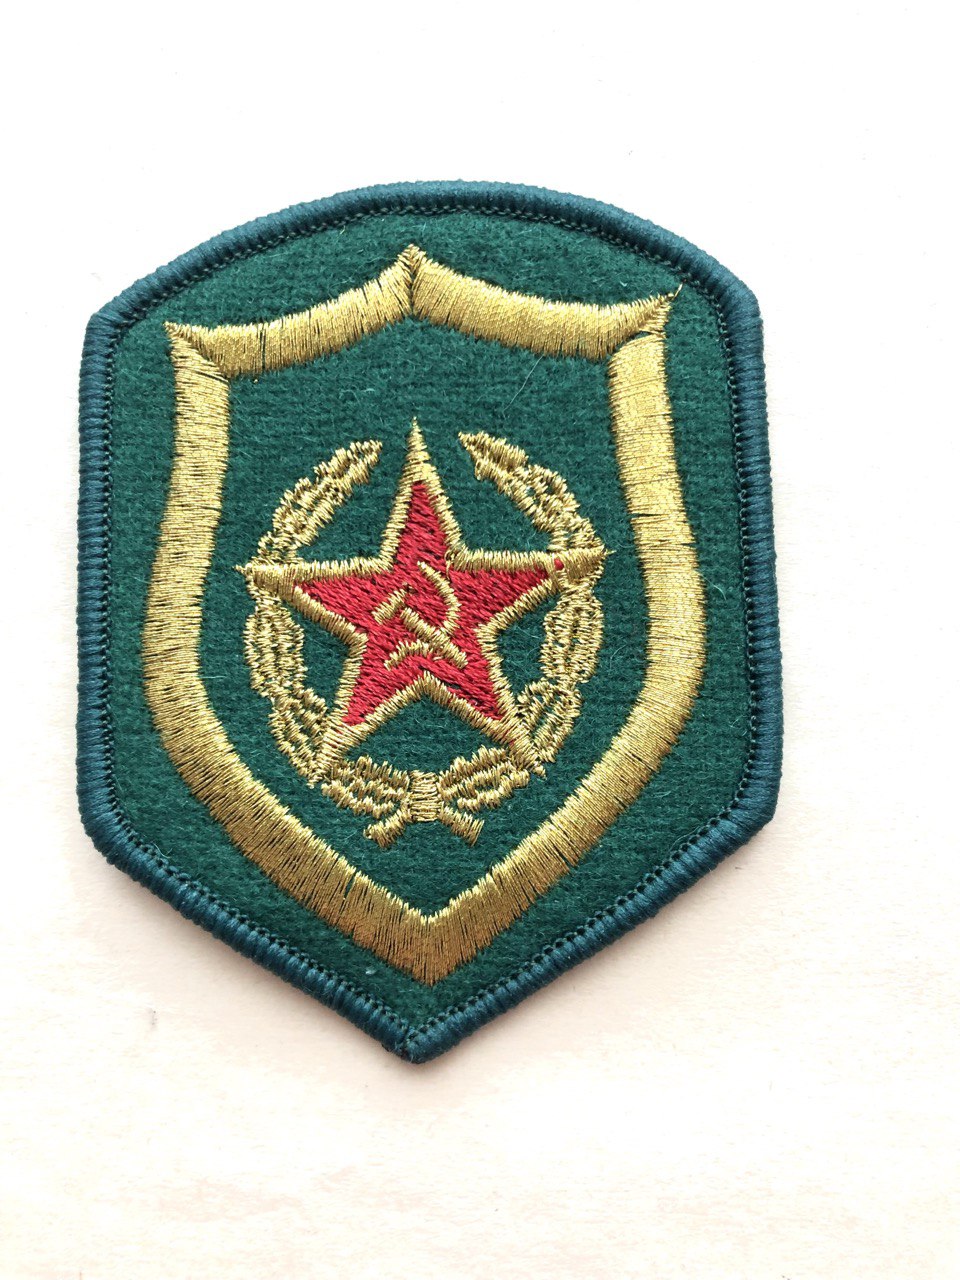 Нарукавный знак (шеврон) ПВ СССР (пограничные войска) Вышитый люрекс